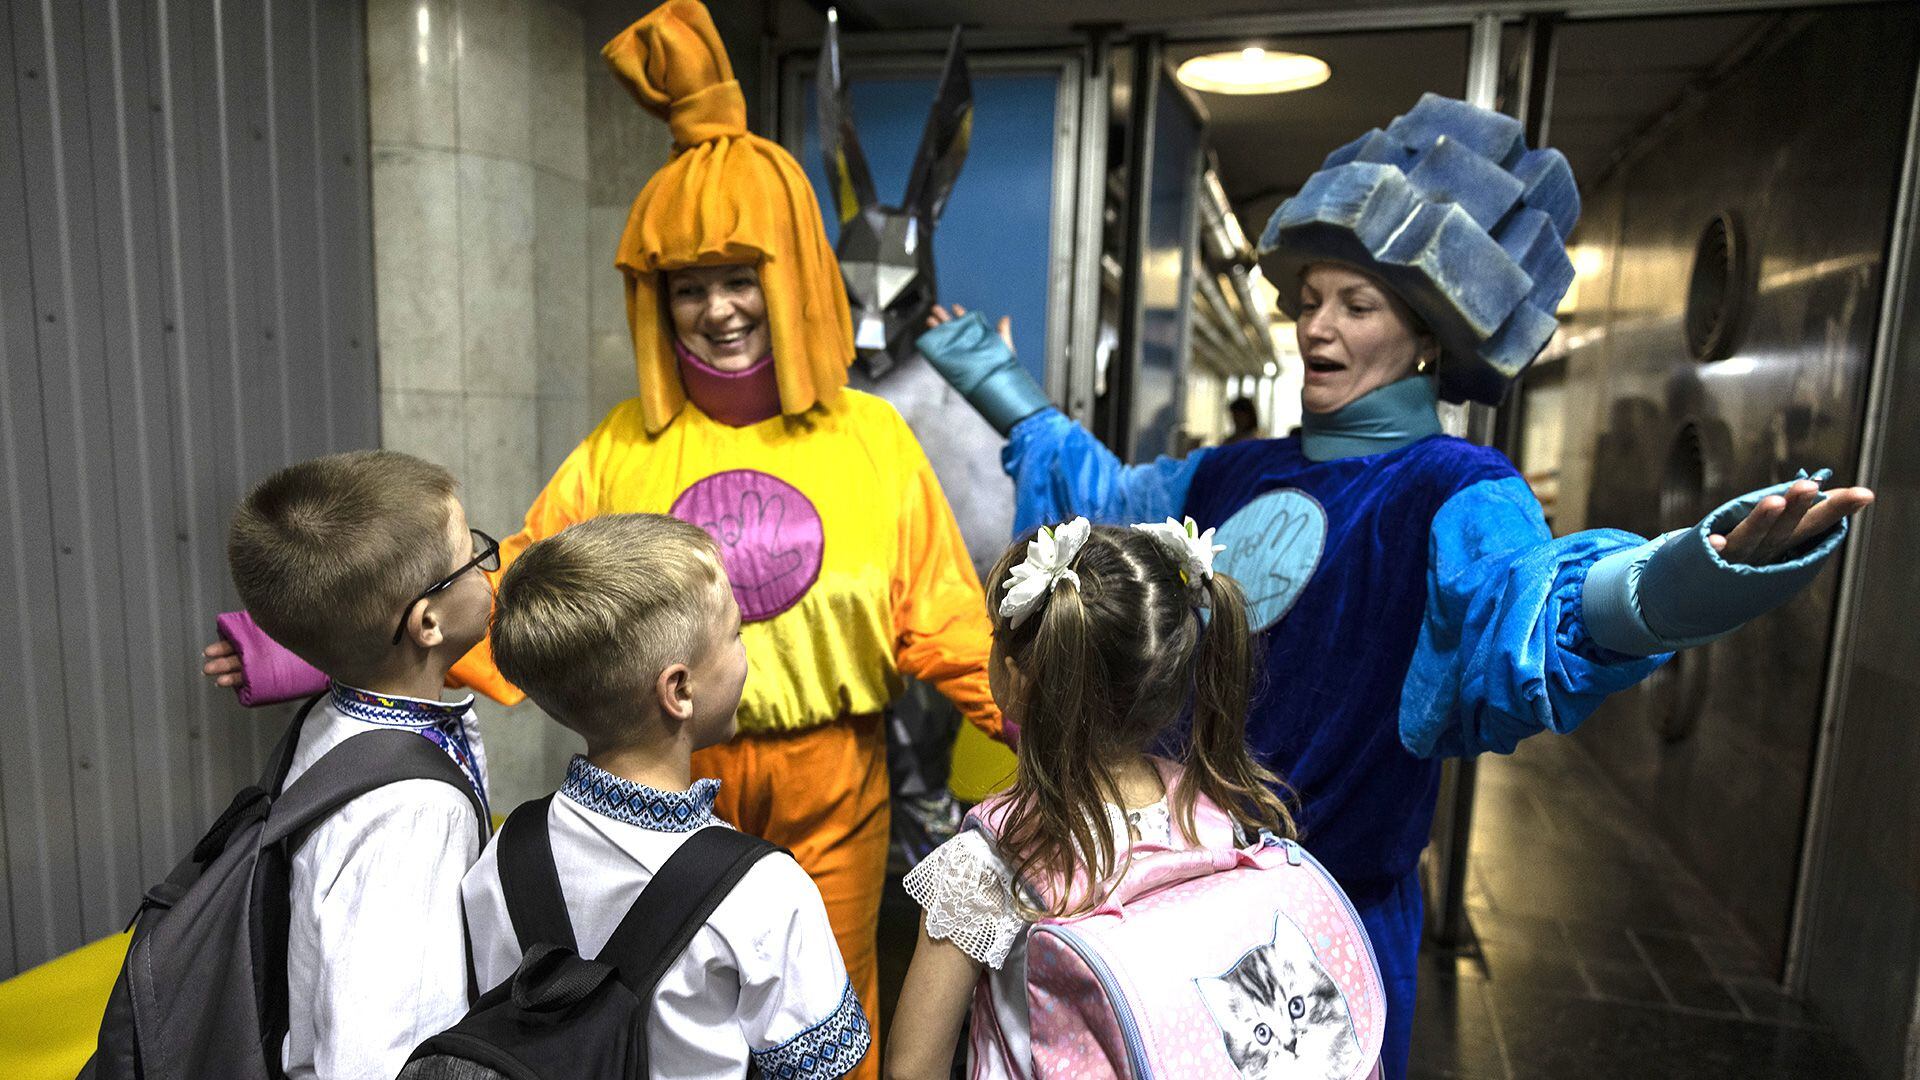 Mujeres disfrazadas dan la bienvenida a alumnos de primer curso antes de acompañar a los niños a su clase en la estación de metro subterránea de Kharkiv, Ucrania (Fotografía de Heidi Levine para The Washington Post)